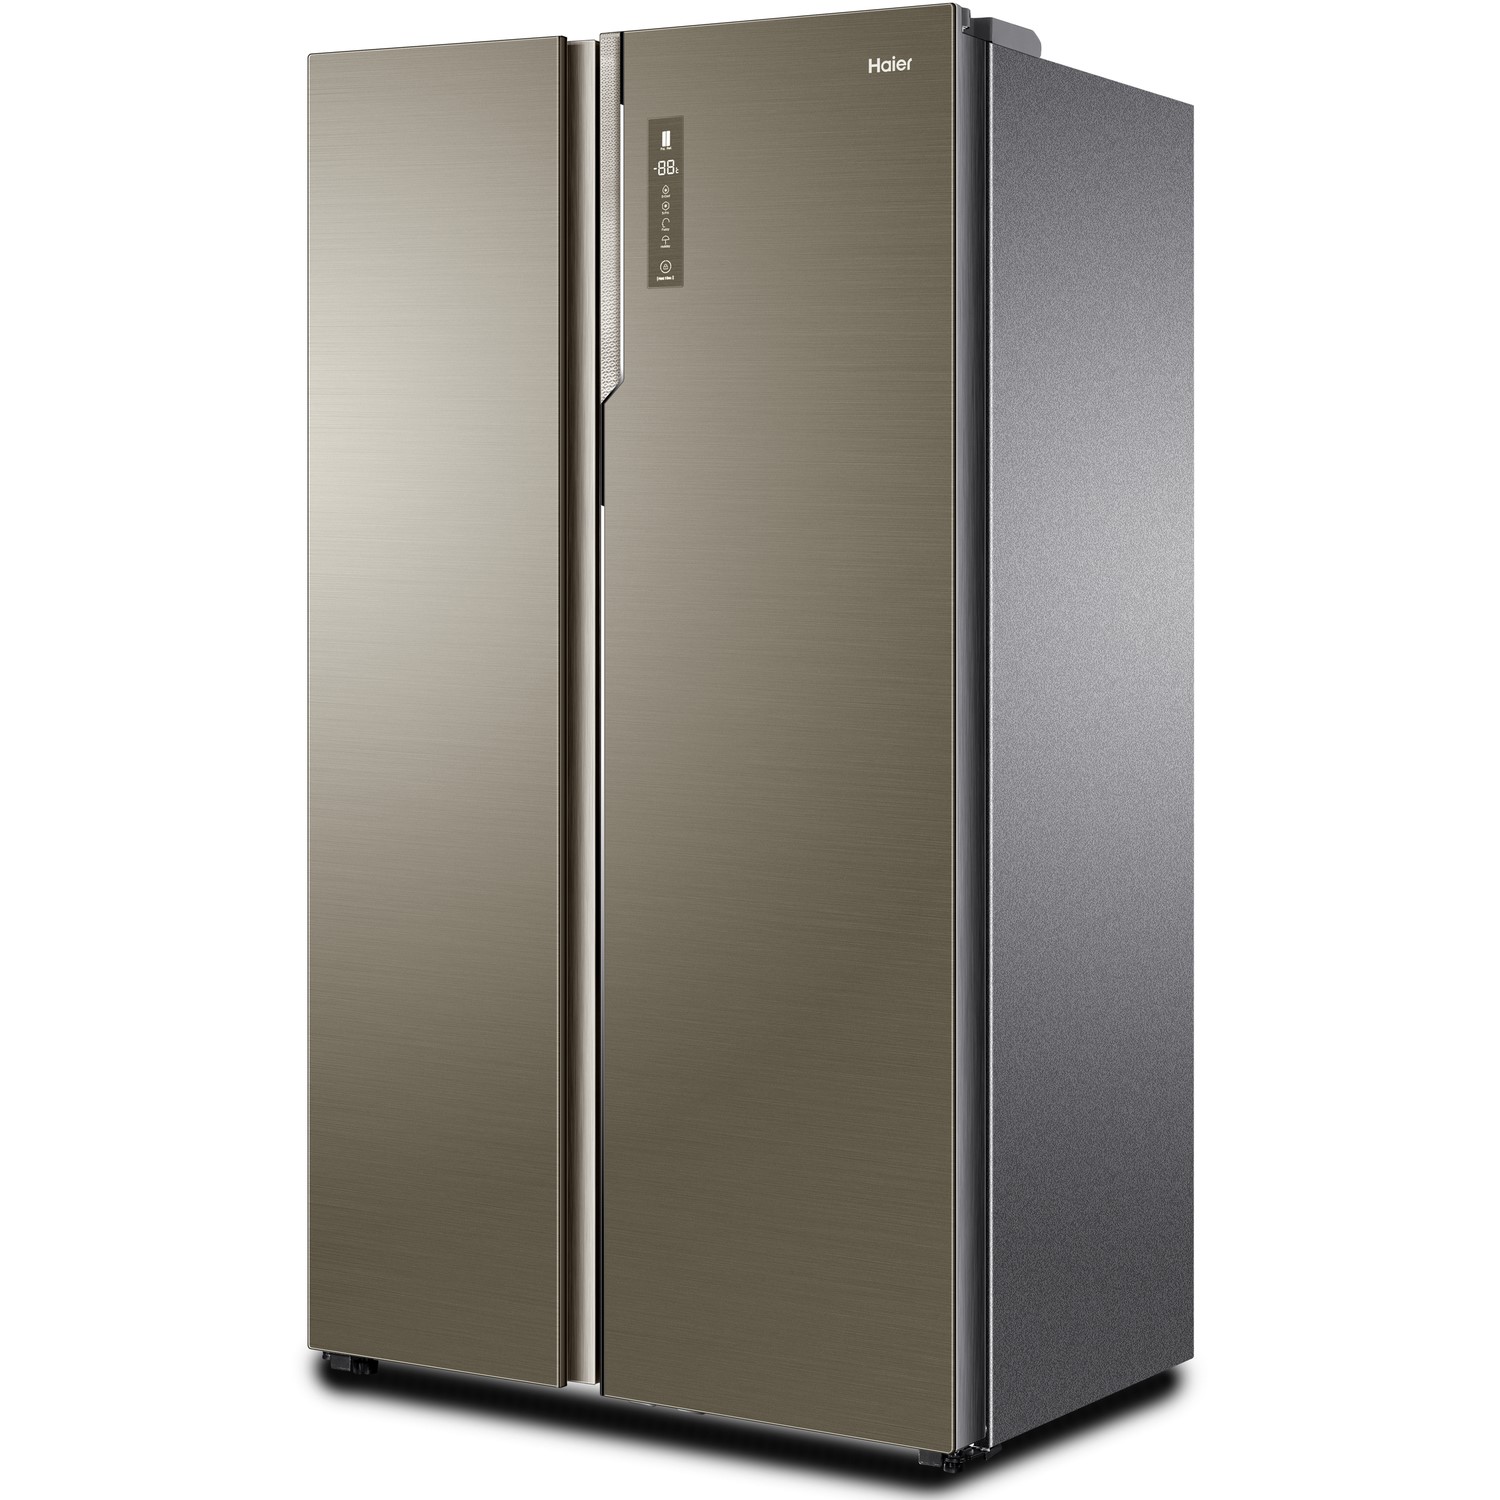 Интернет озон холодильники. Холодильник Наер двухдверный. Холодильник Haier Сайд бай Сайд. Холодильник Haier HRF 229biru. Холодильник Haier SBS hrf520ss.